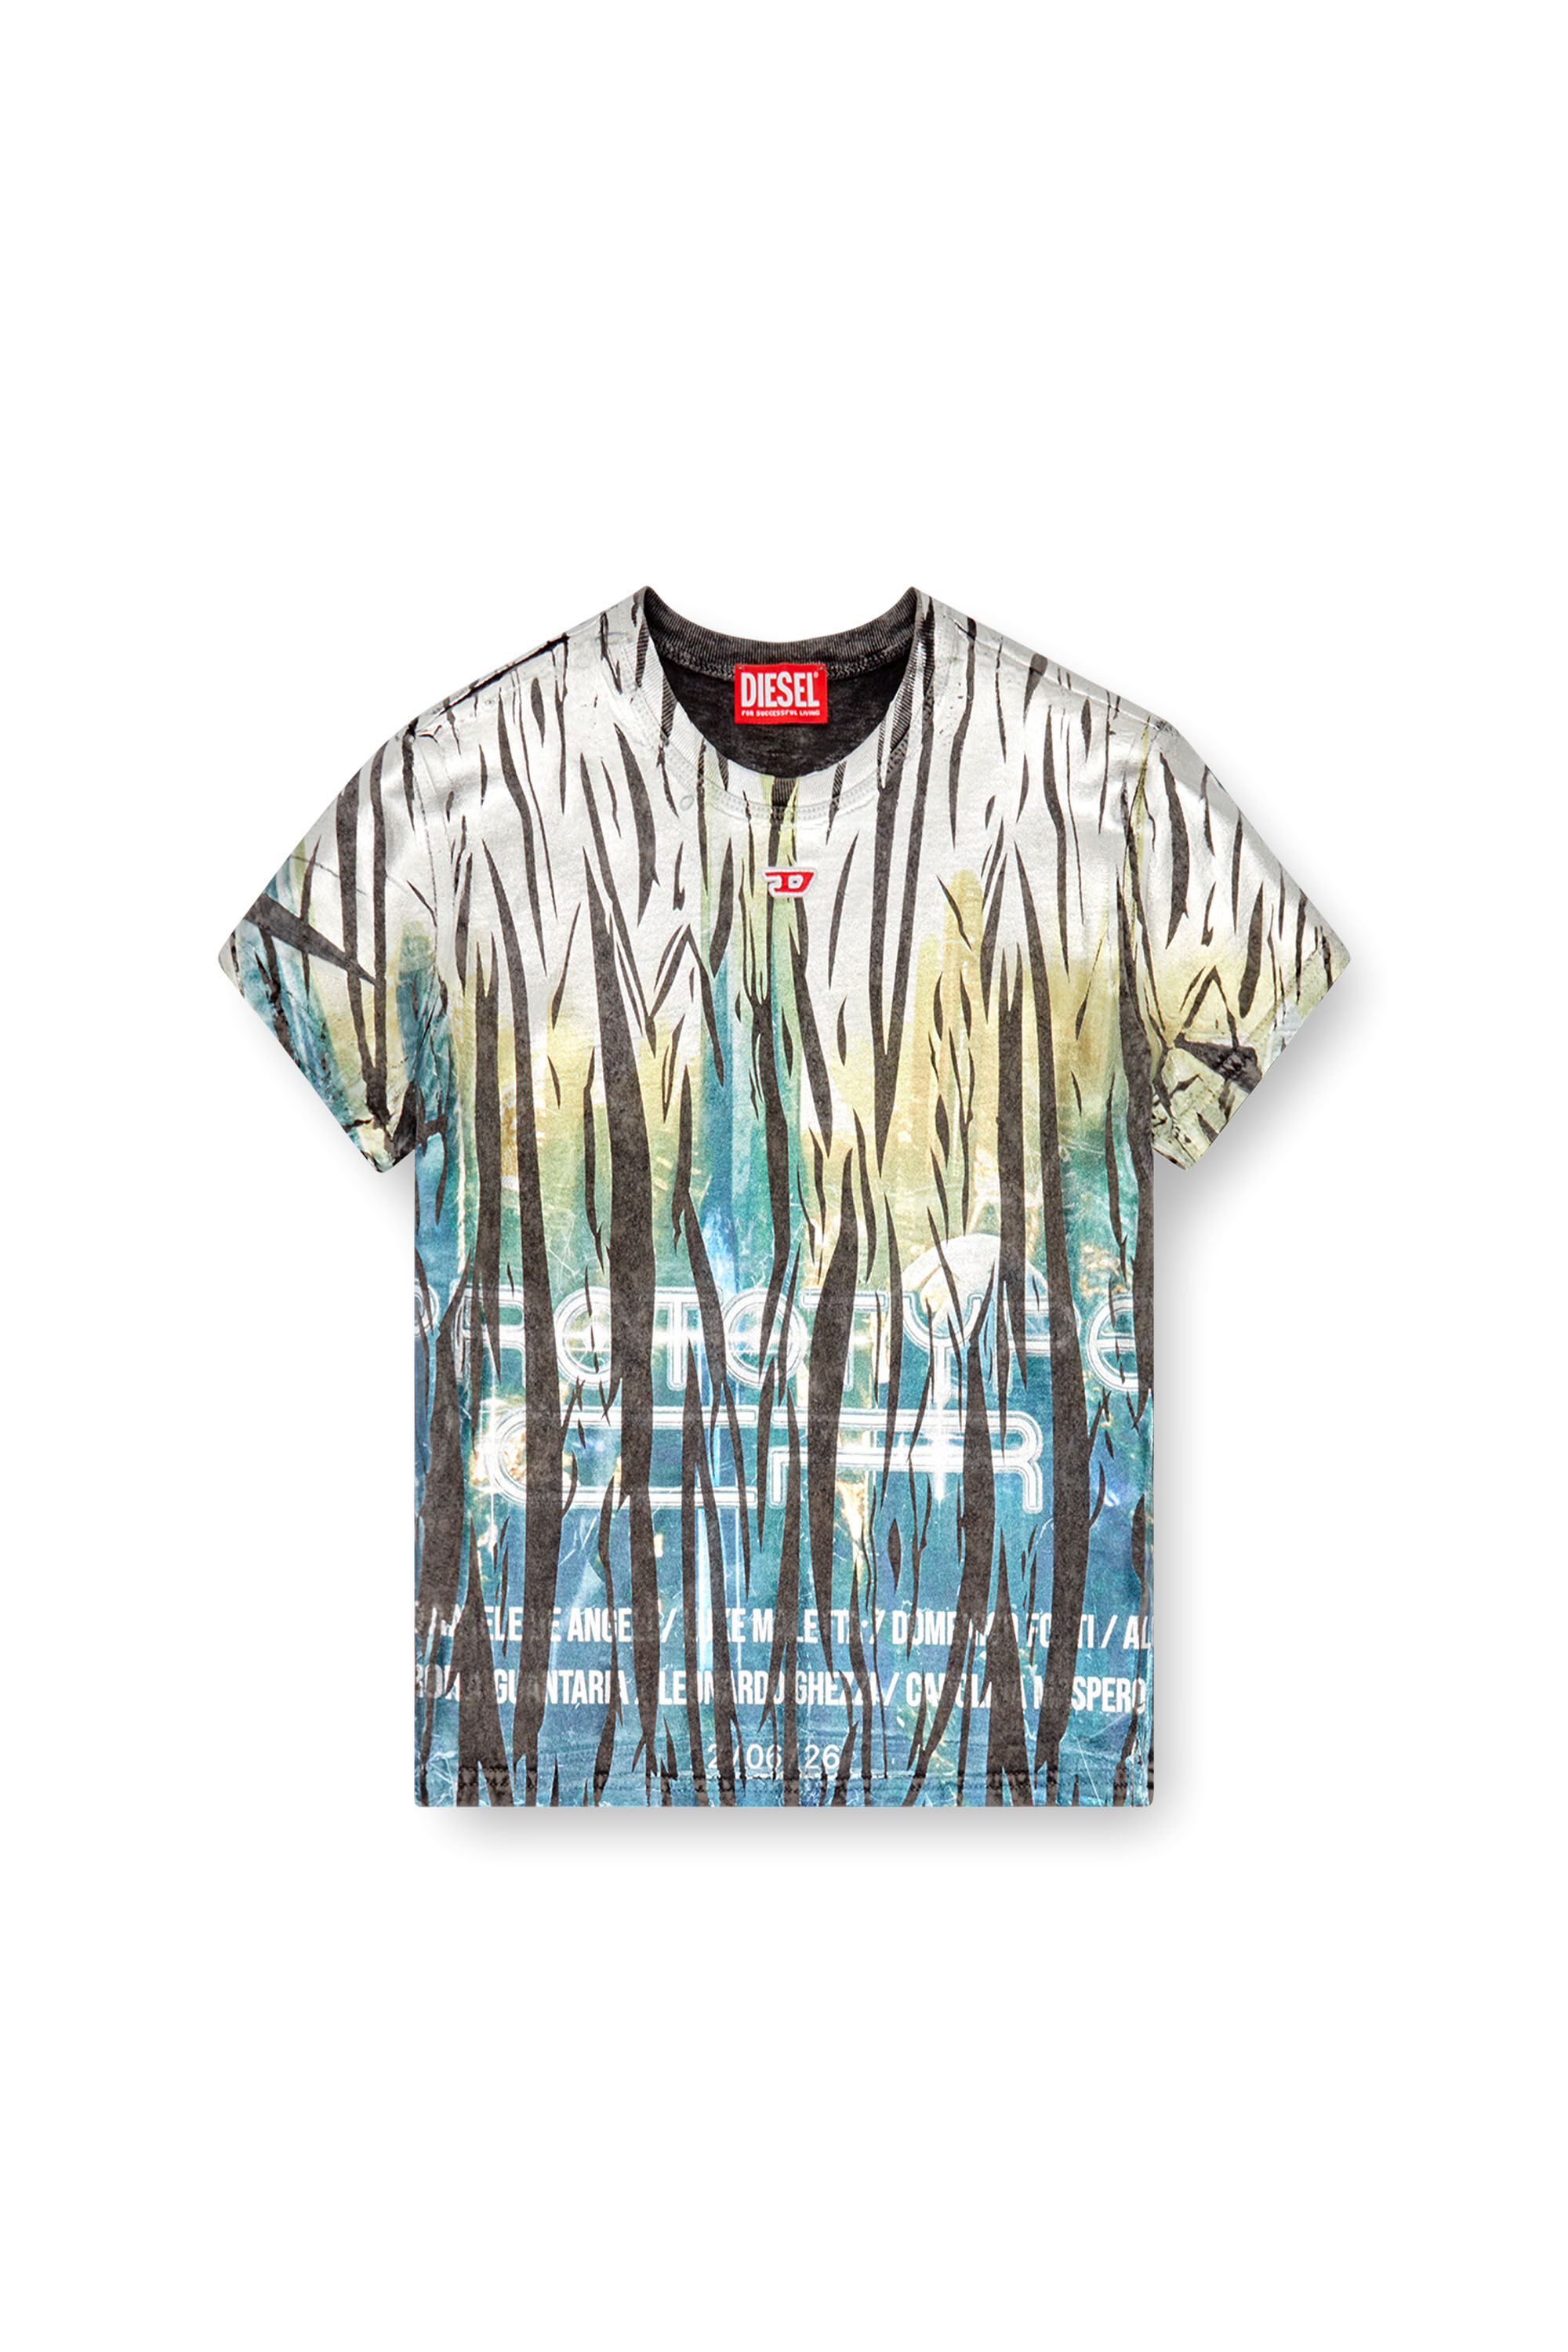 Diesel - T-UNCUTIE-LONG-FOIL, Femme T-shirt avec traitement froissé in Polychrome - Image 4